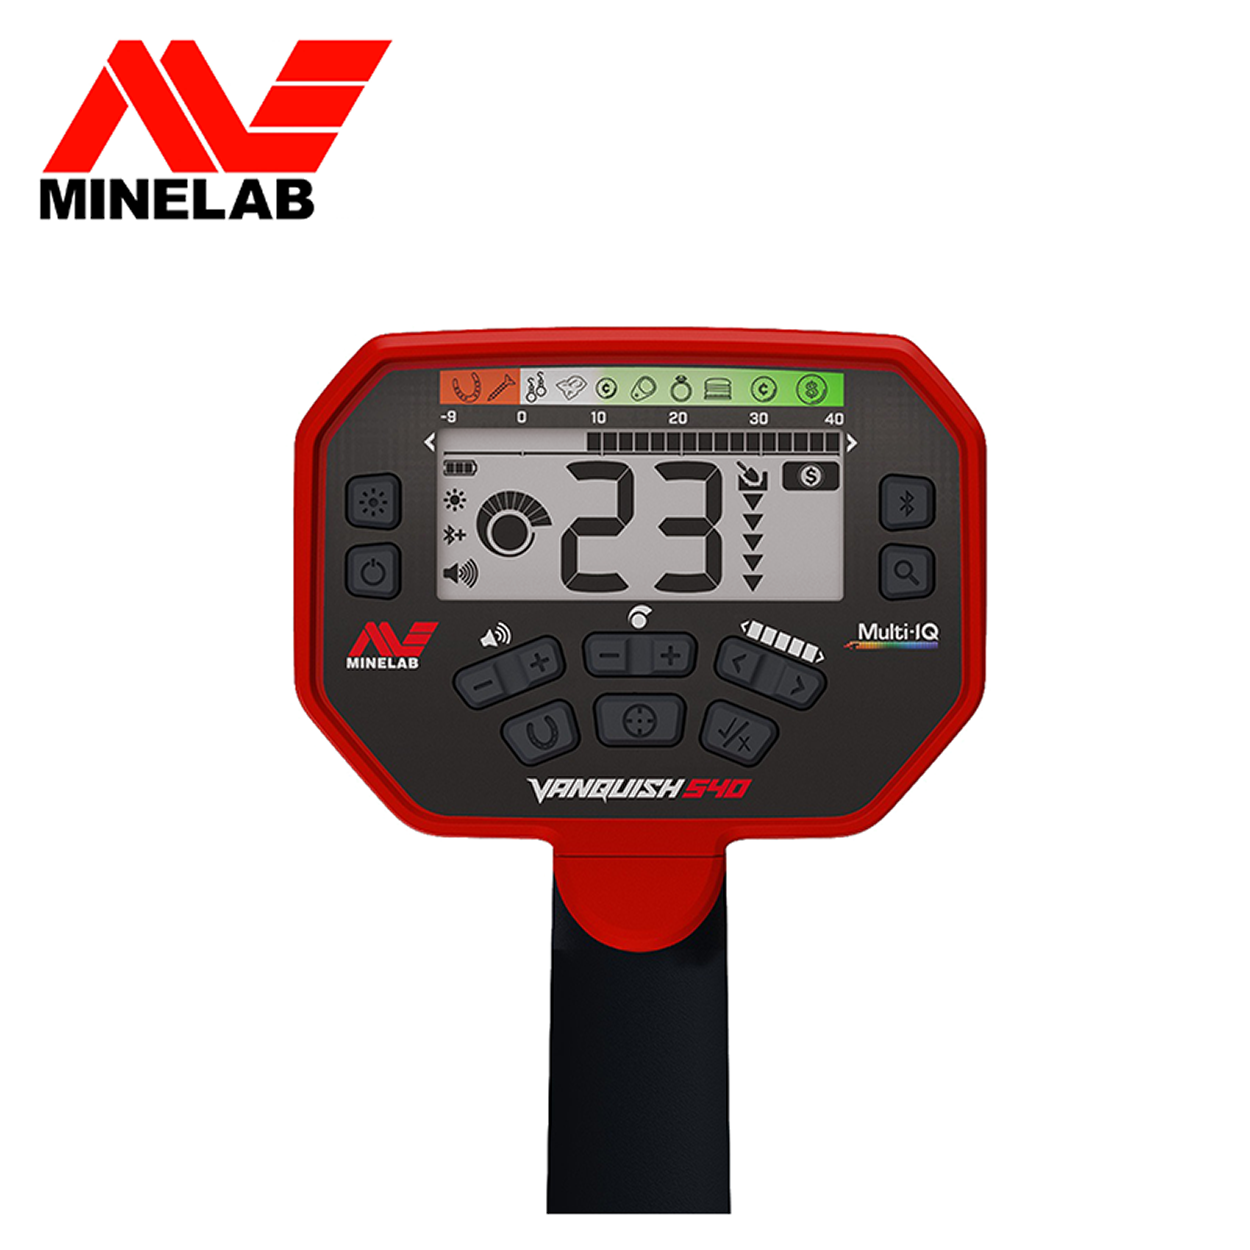 MINELAB Vanquish 540 Pro Paket Metalldetektor Multifrequenz